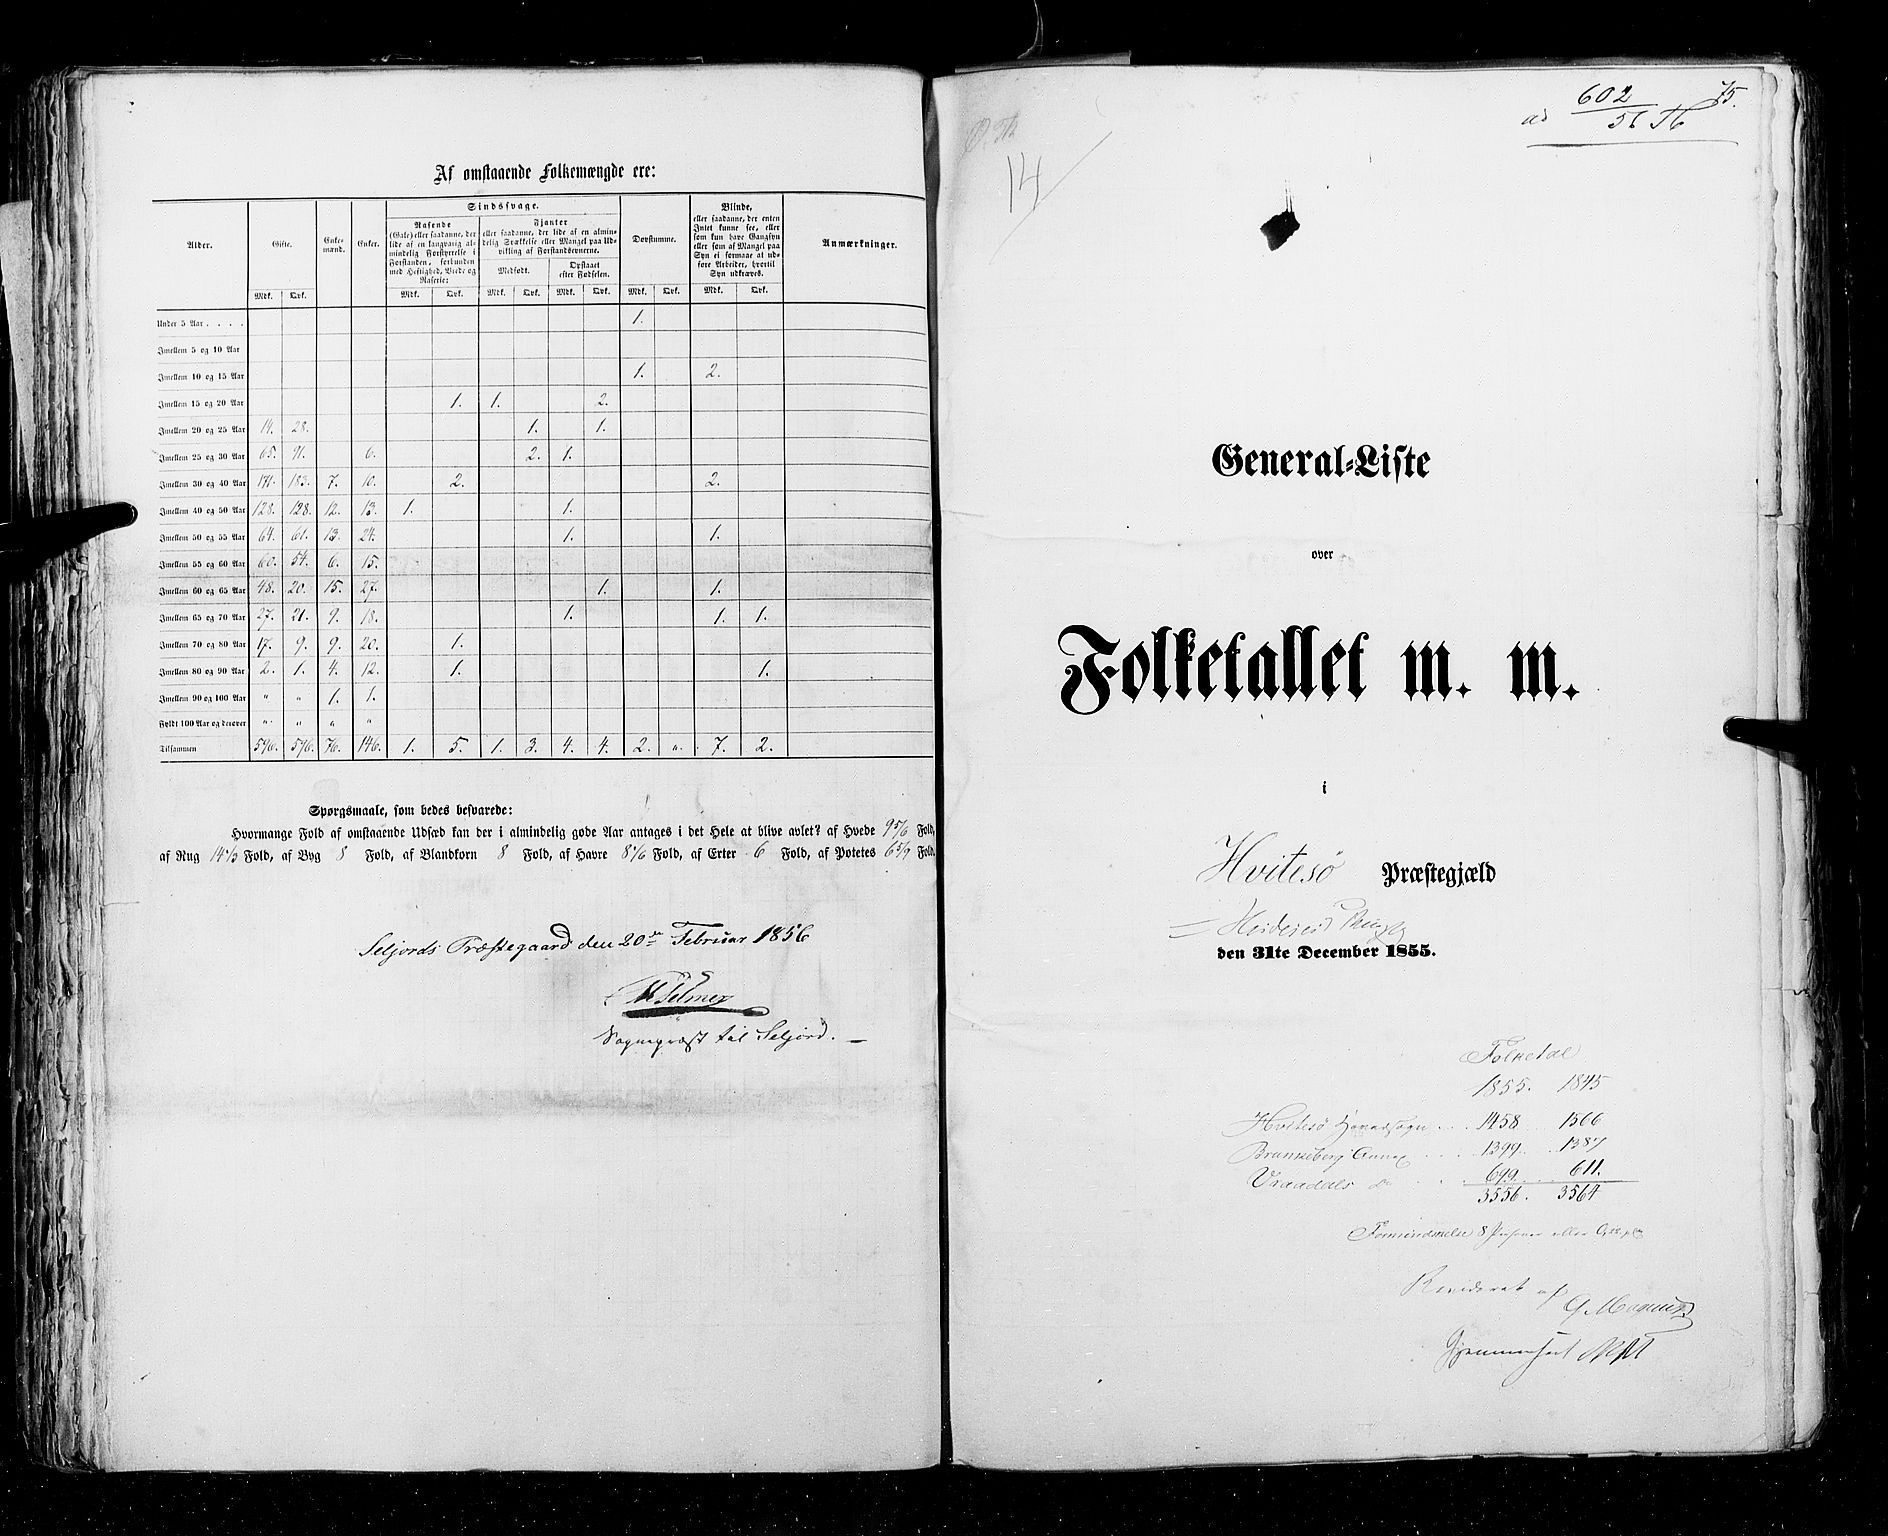 RA, Census 1855, vol. 3: Bratsberg amt, Nedenes amt og Lister og Mandal amt, 1855, p. 75